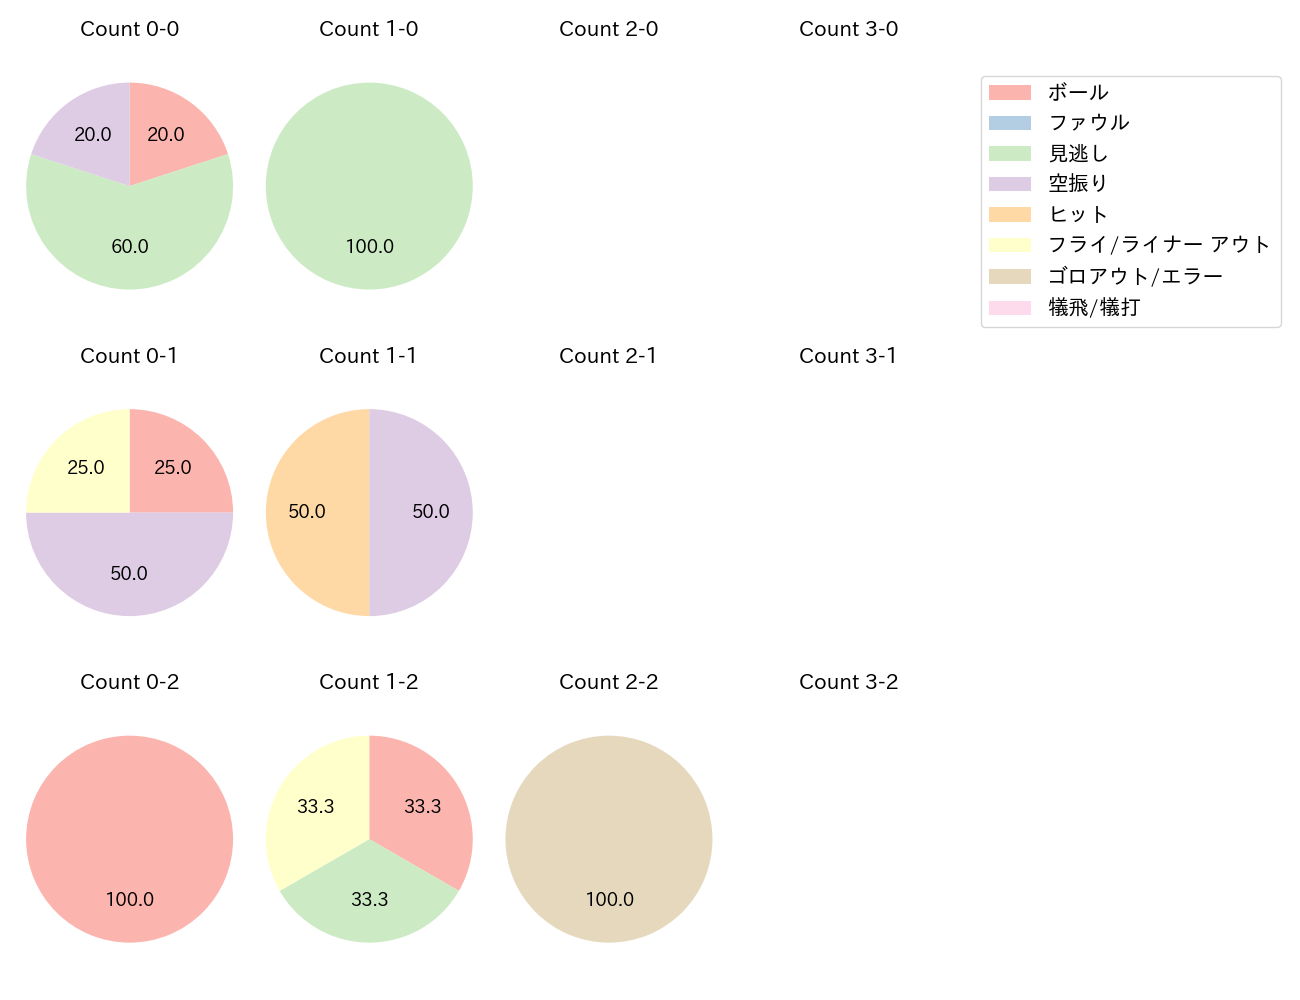 上茶谷 大河の球数分布(2022年5月)